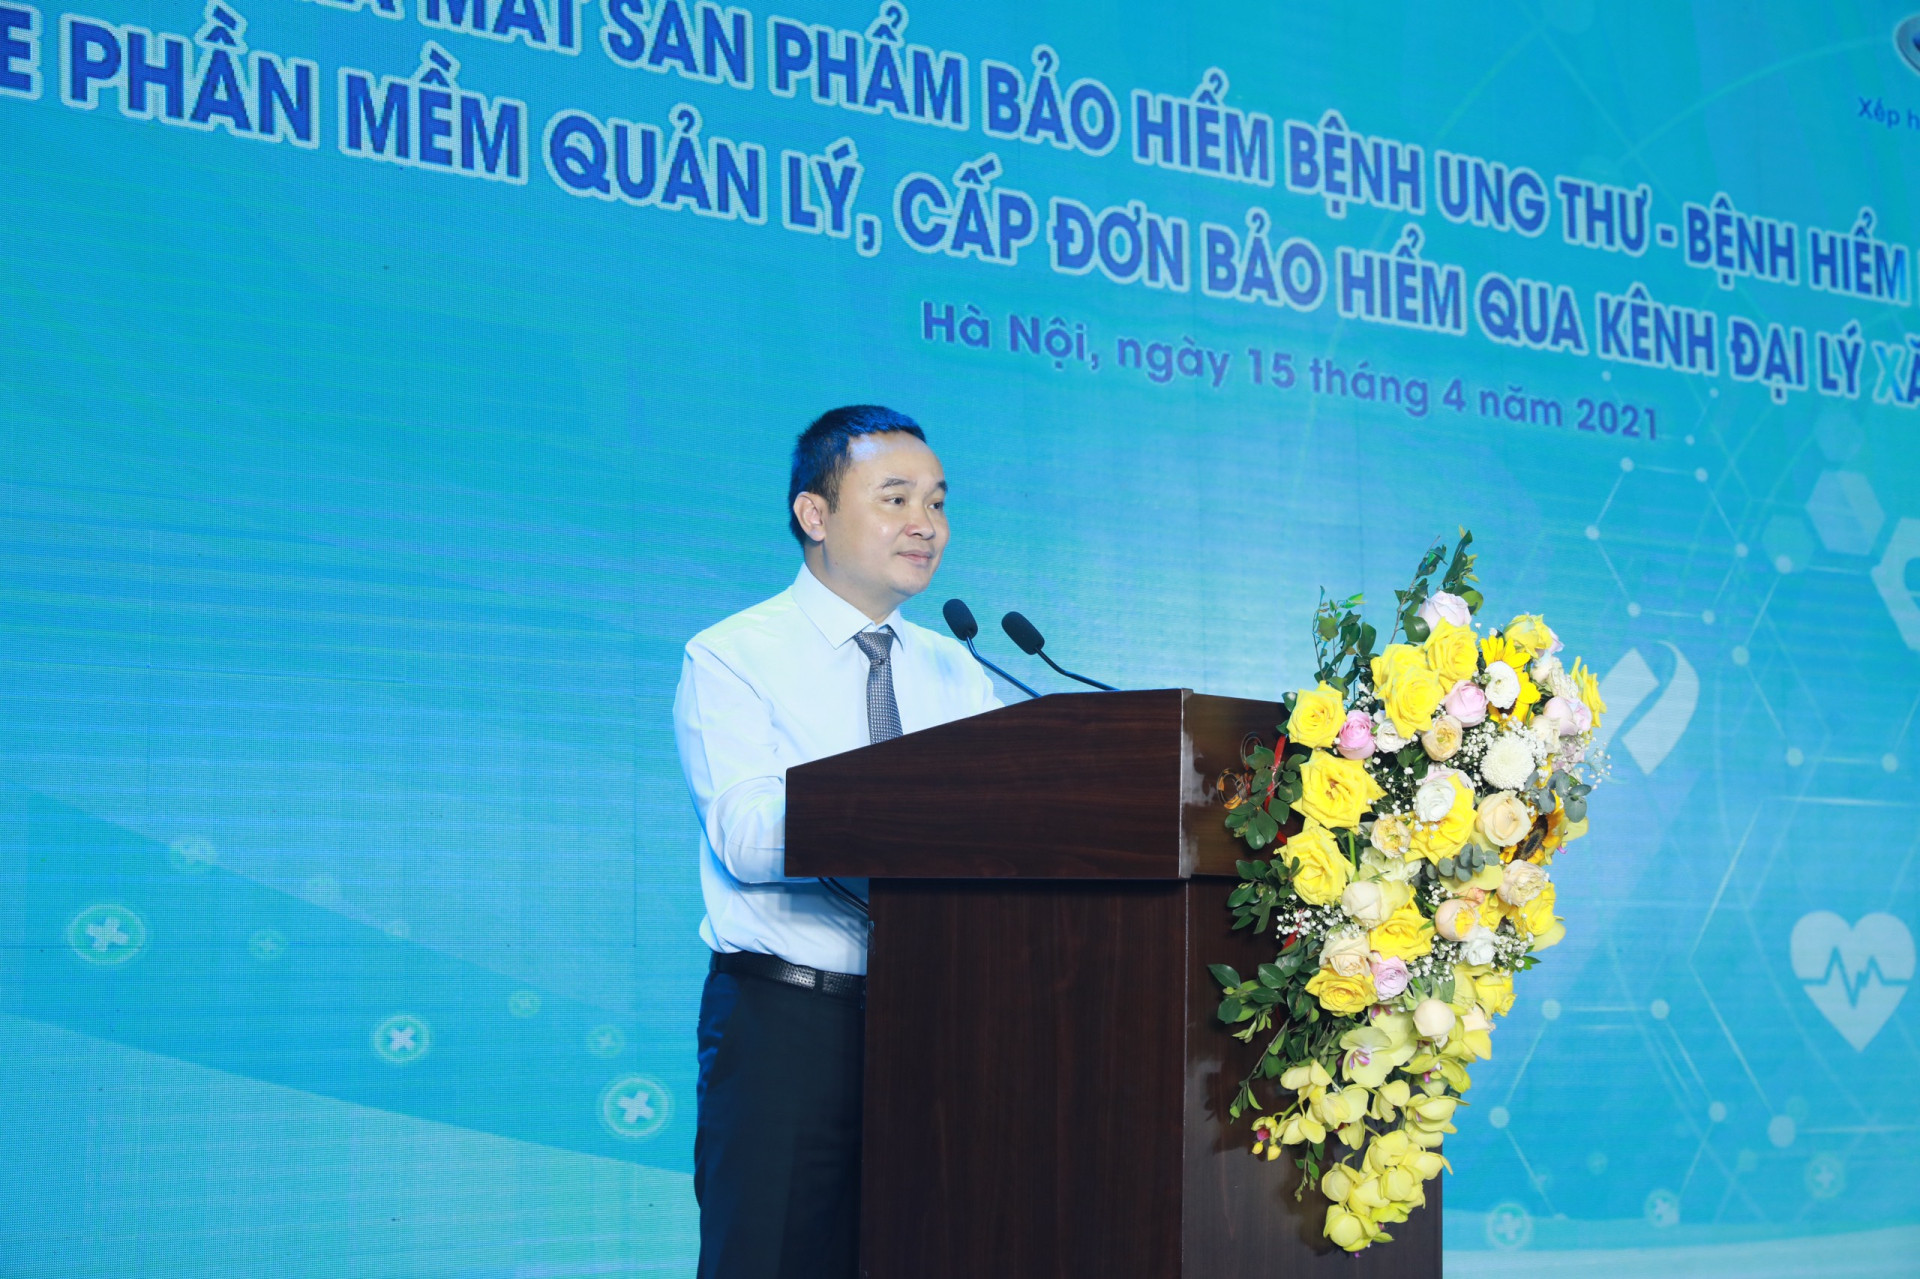 Ngày 11/2, HĐQT Tập đoàn Xăng dầu Việt Nam (Petrolimex, mã chứng khoán PLX) đã ra quyết định số 68 bổ nhiệm ông Đào Nam Hải giữ chức Tổng Giám đốc Petrolimex.